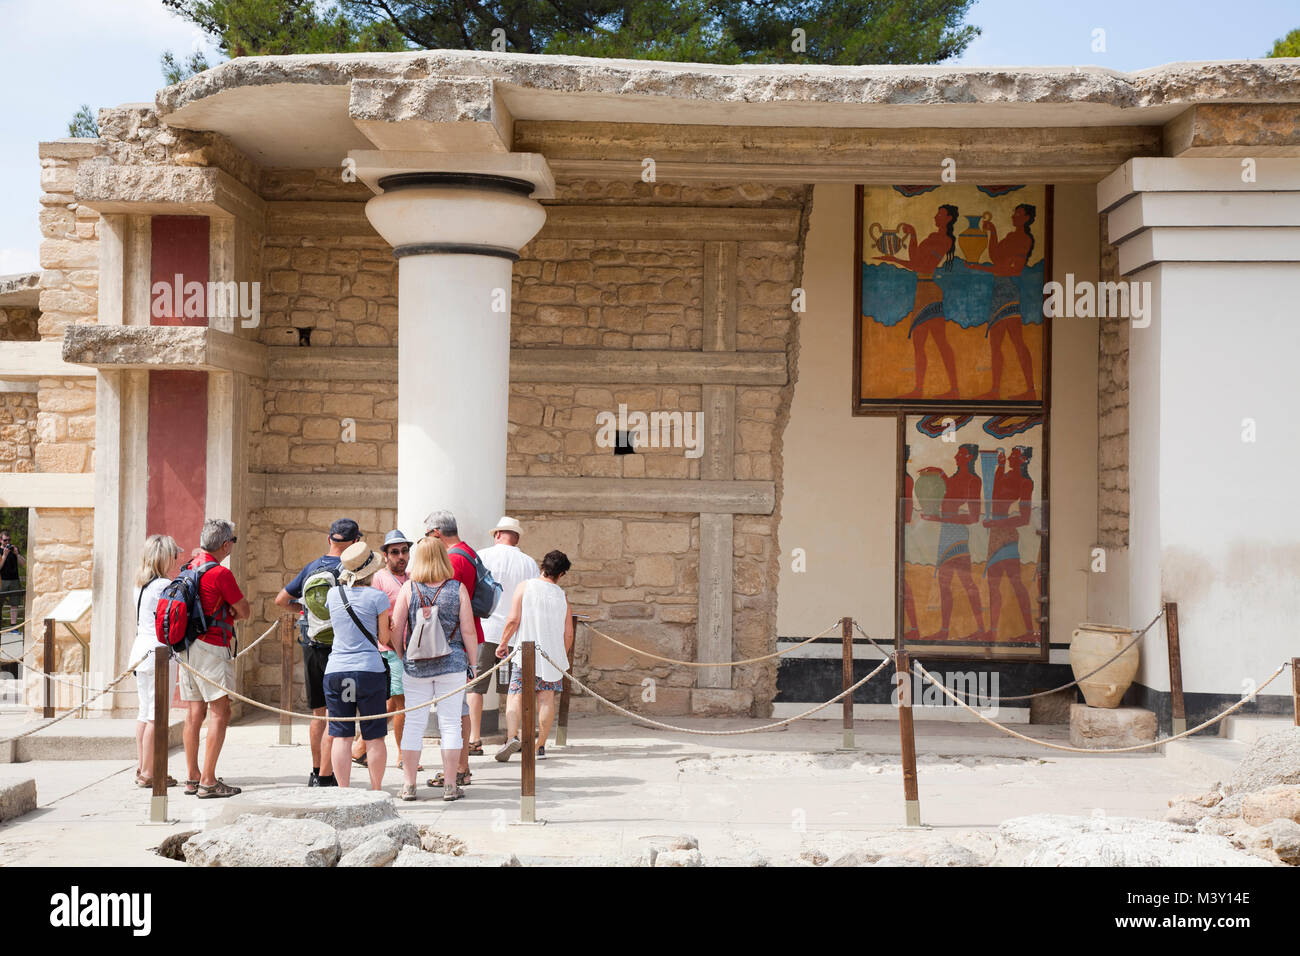 South propylaeum, Cup bearer fresco and Procession fresco, Knossos palace archaeological site, Crete island, Greece, Europe Stock Photo